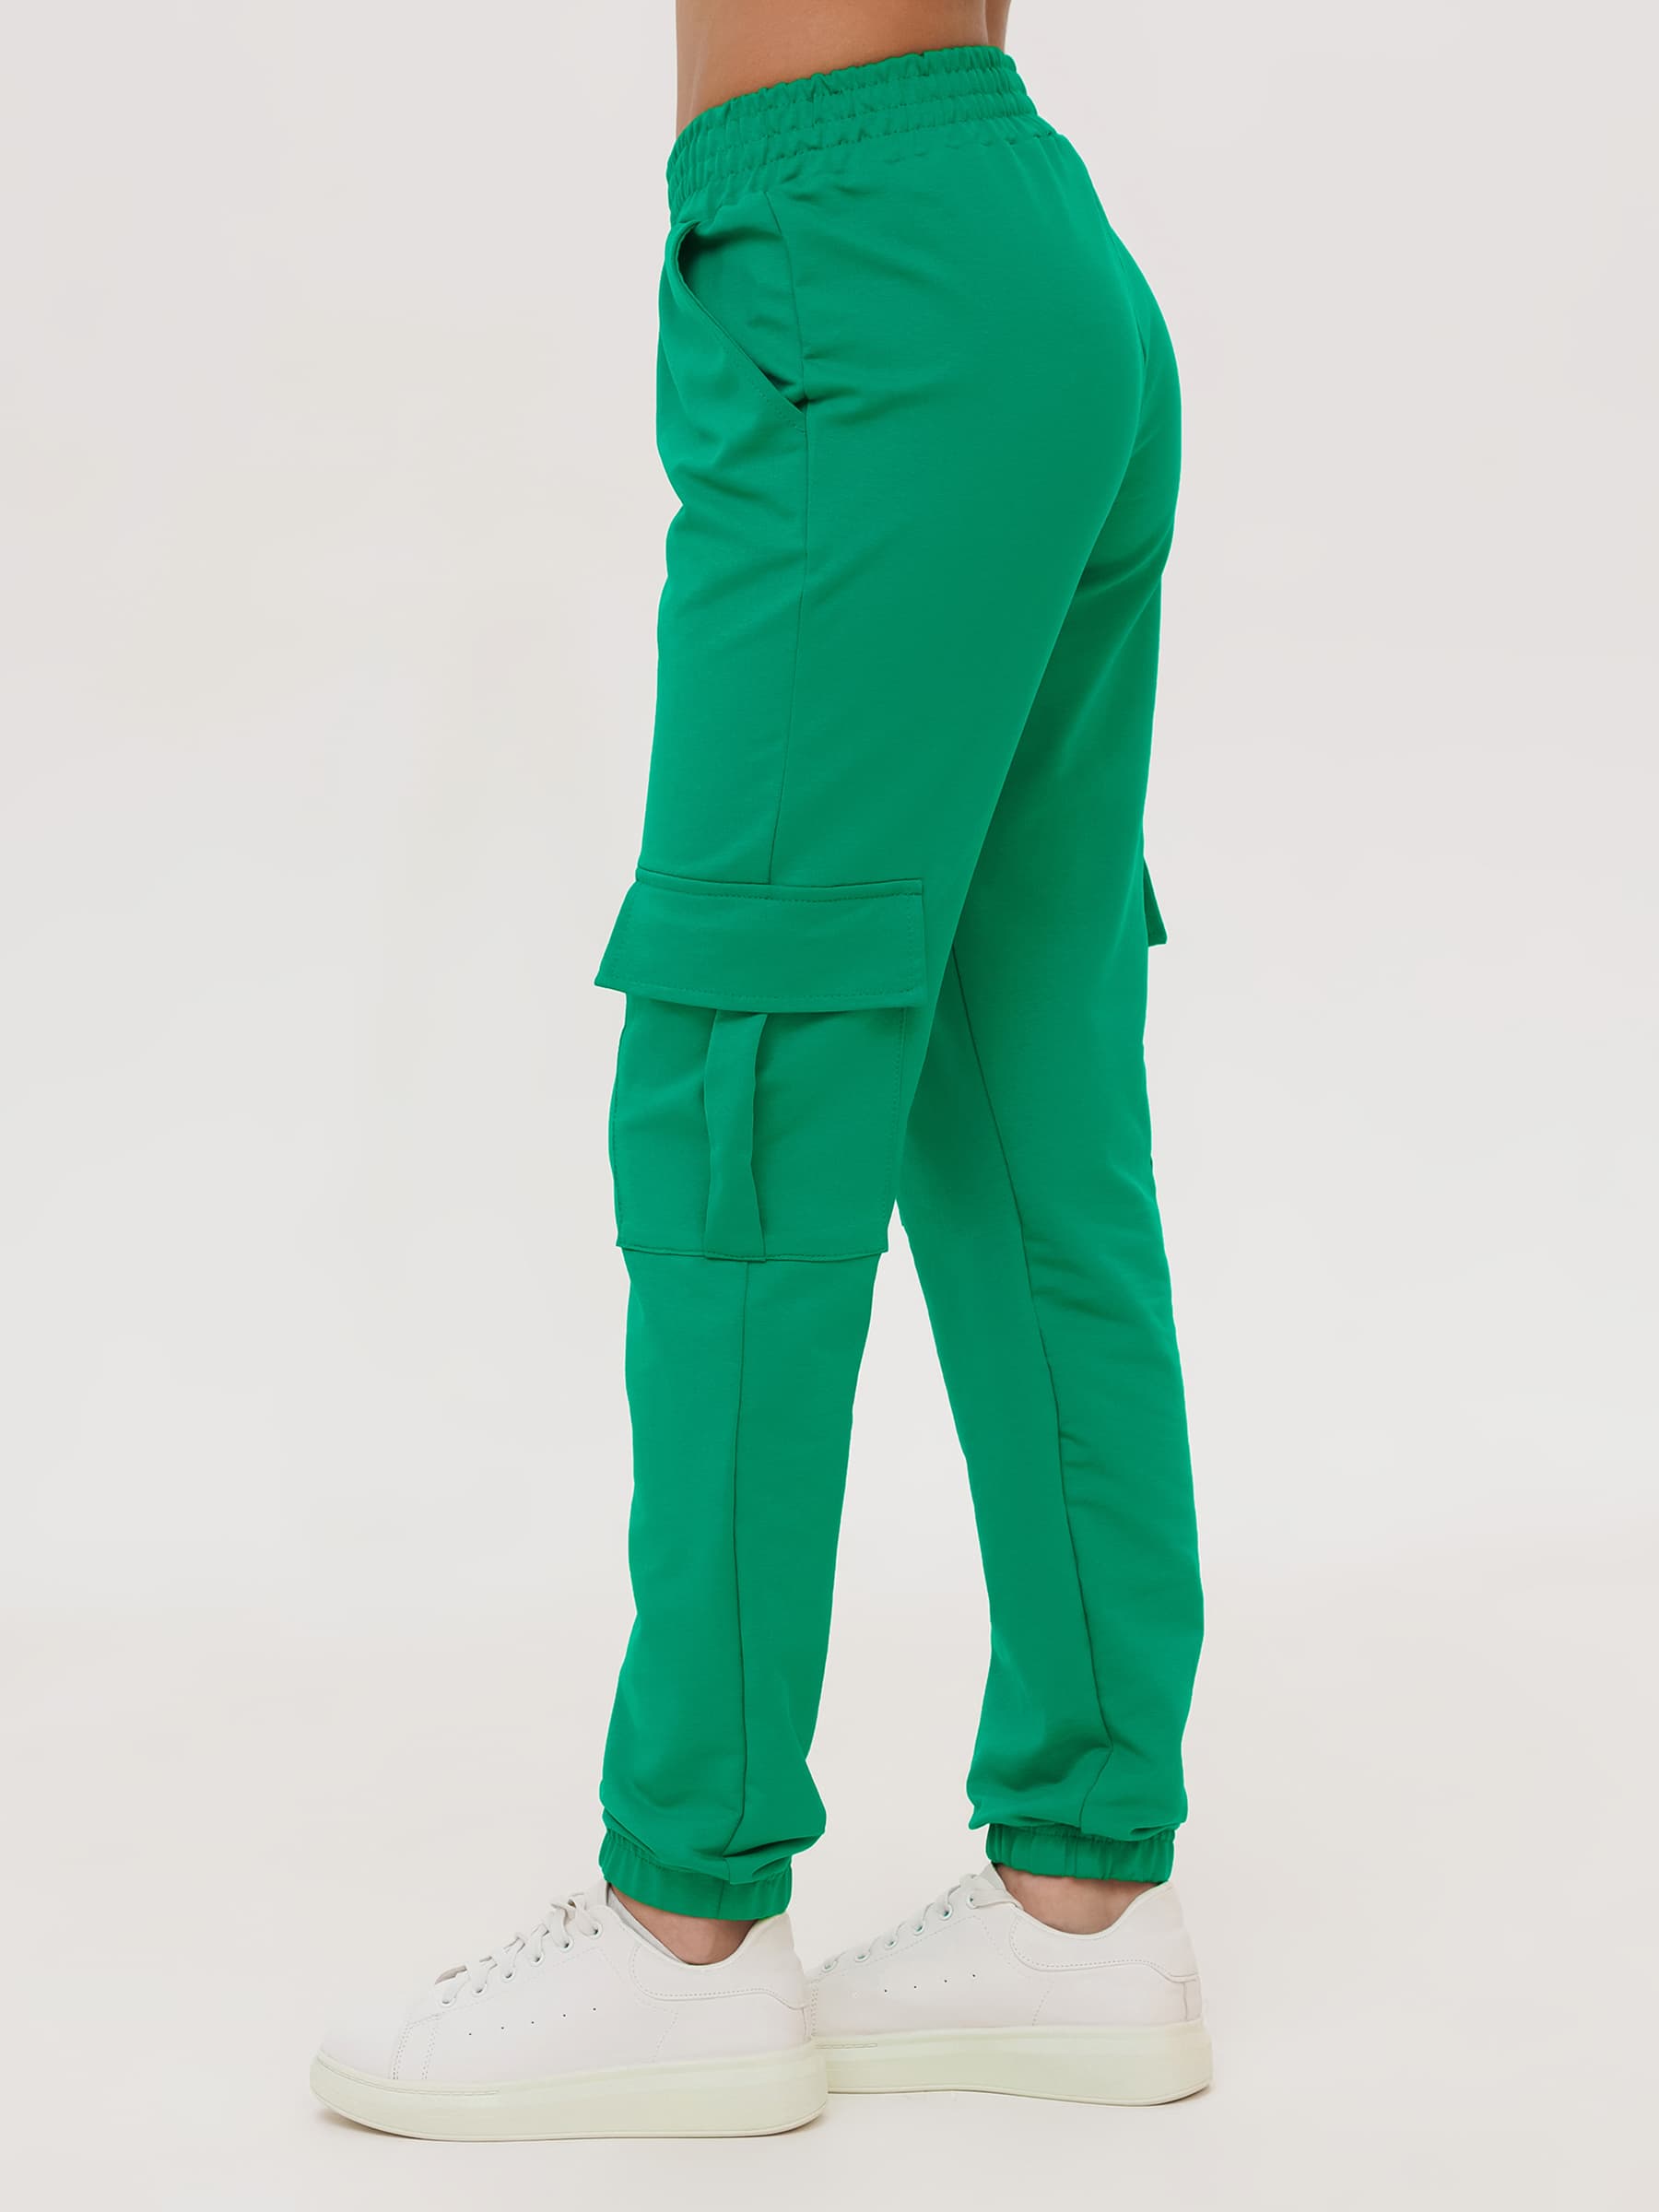 Жен. брюки повседневные арт. 23-0524 Зеленый р. 52 Моделлини, размер 52 - фото 9